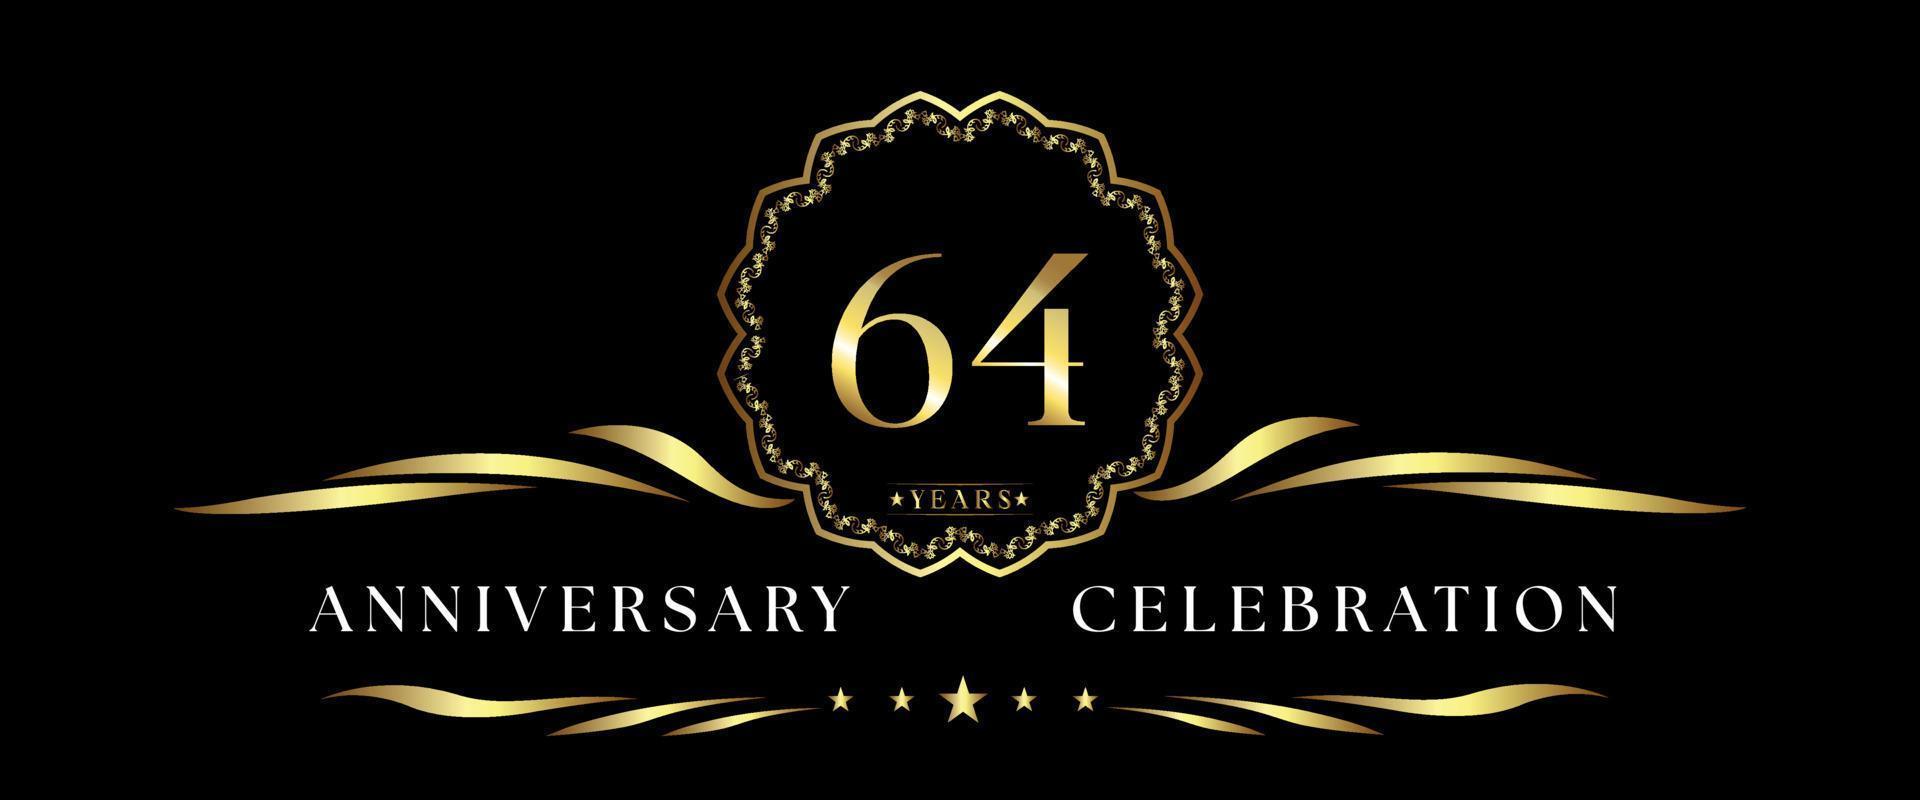 Célébration de l'anniversaire de 64 ans avec cadre décoratif doré isolé sur fond noir. création vectorielle pour carte de voeux, fête d'anniversaire, mariage, fête d'événement, cérémonie. Logo anniversaire 64 ans. vecteur